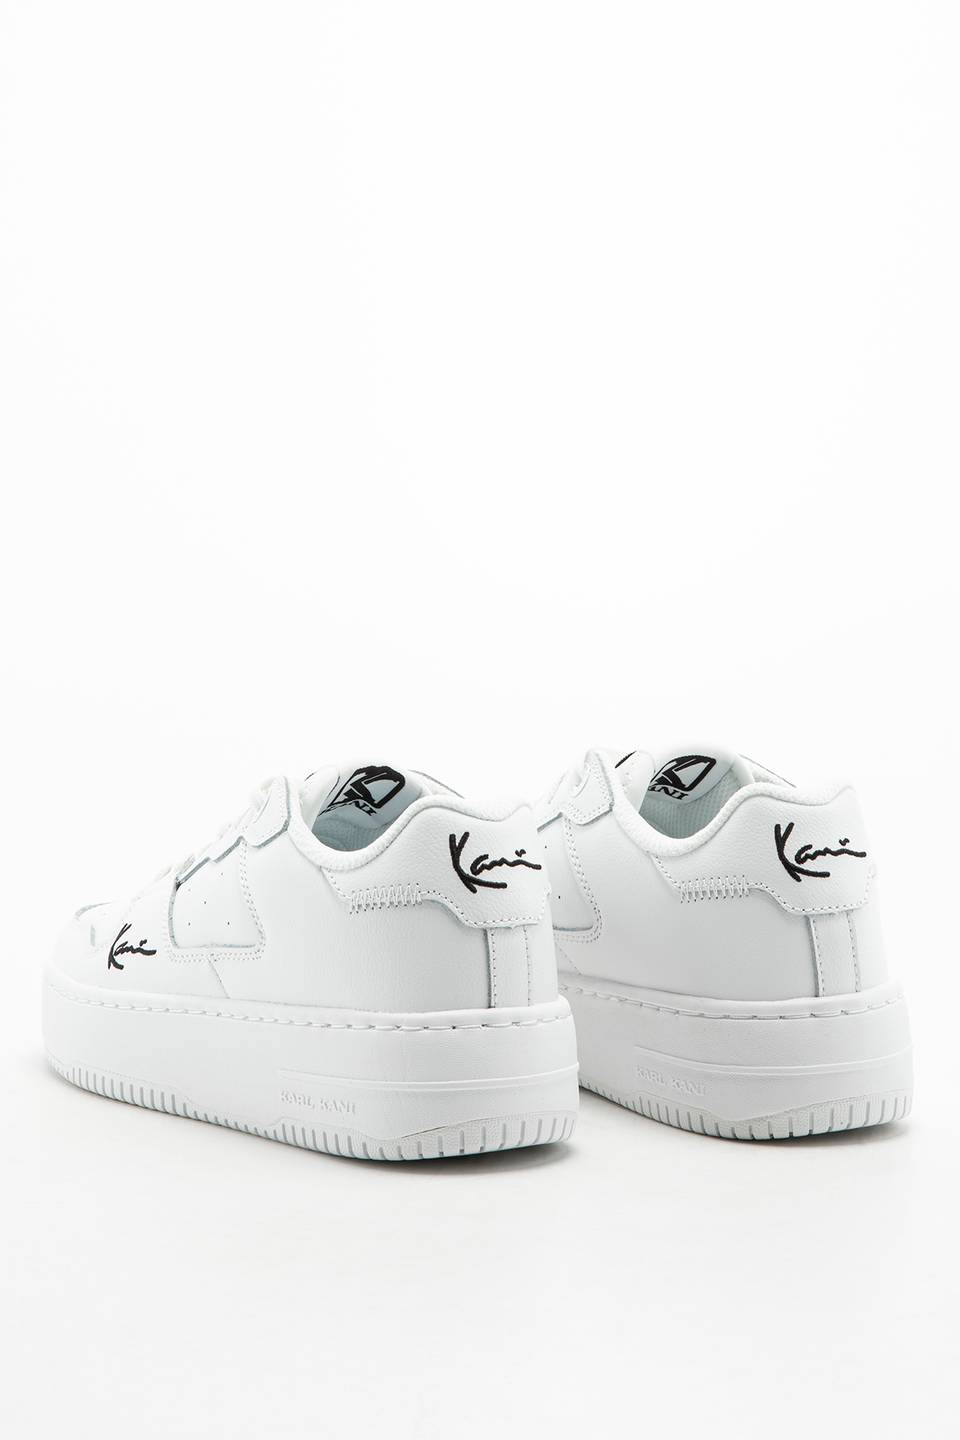 Sneakers Karl Kani 89 UP white/black 1180625